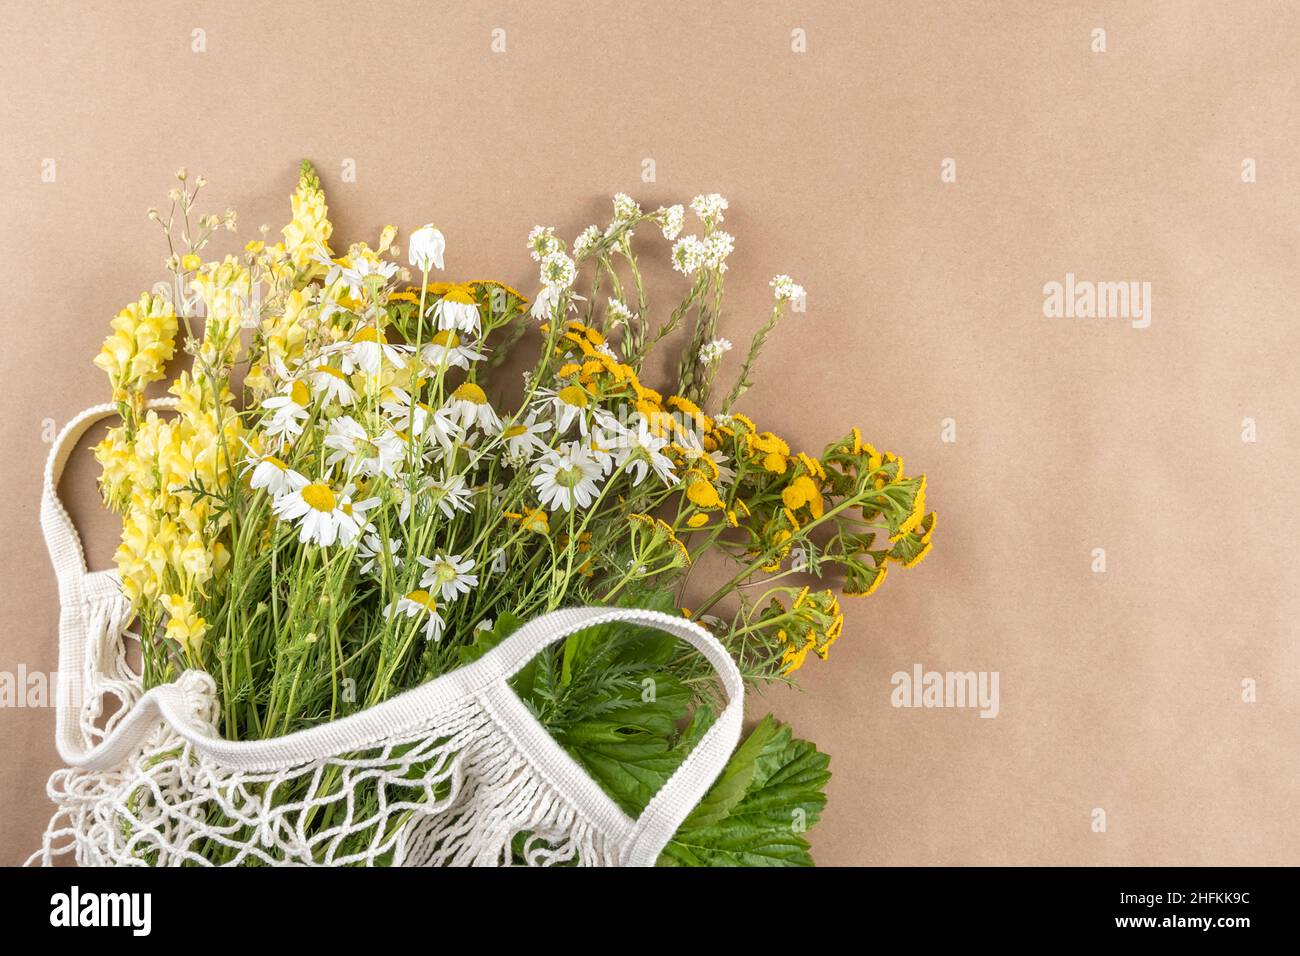 Herbes de champ et fleurs dans un sac écologique sur fond beige, concept écologique.Vue de dessus espace de copie. Banque D'Images